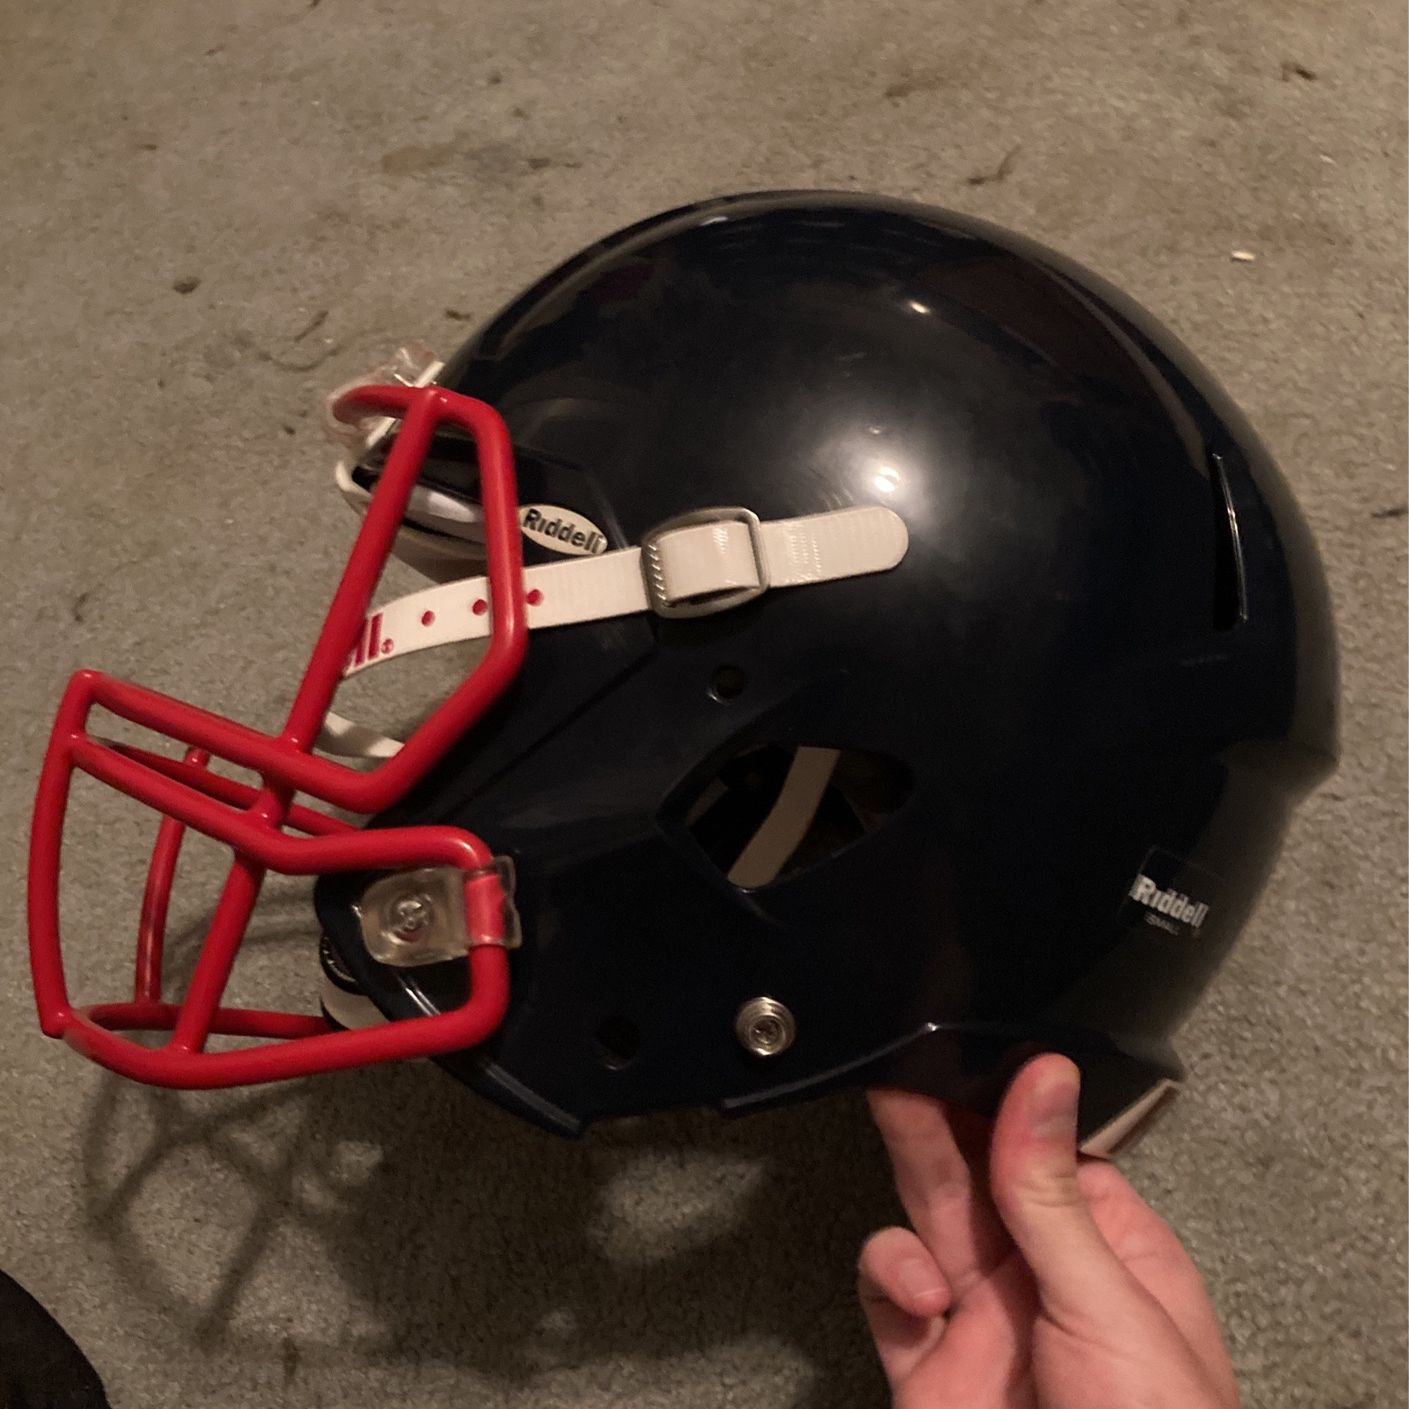 Real Football Helmet No Damage At All. 